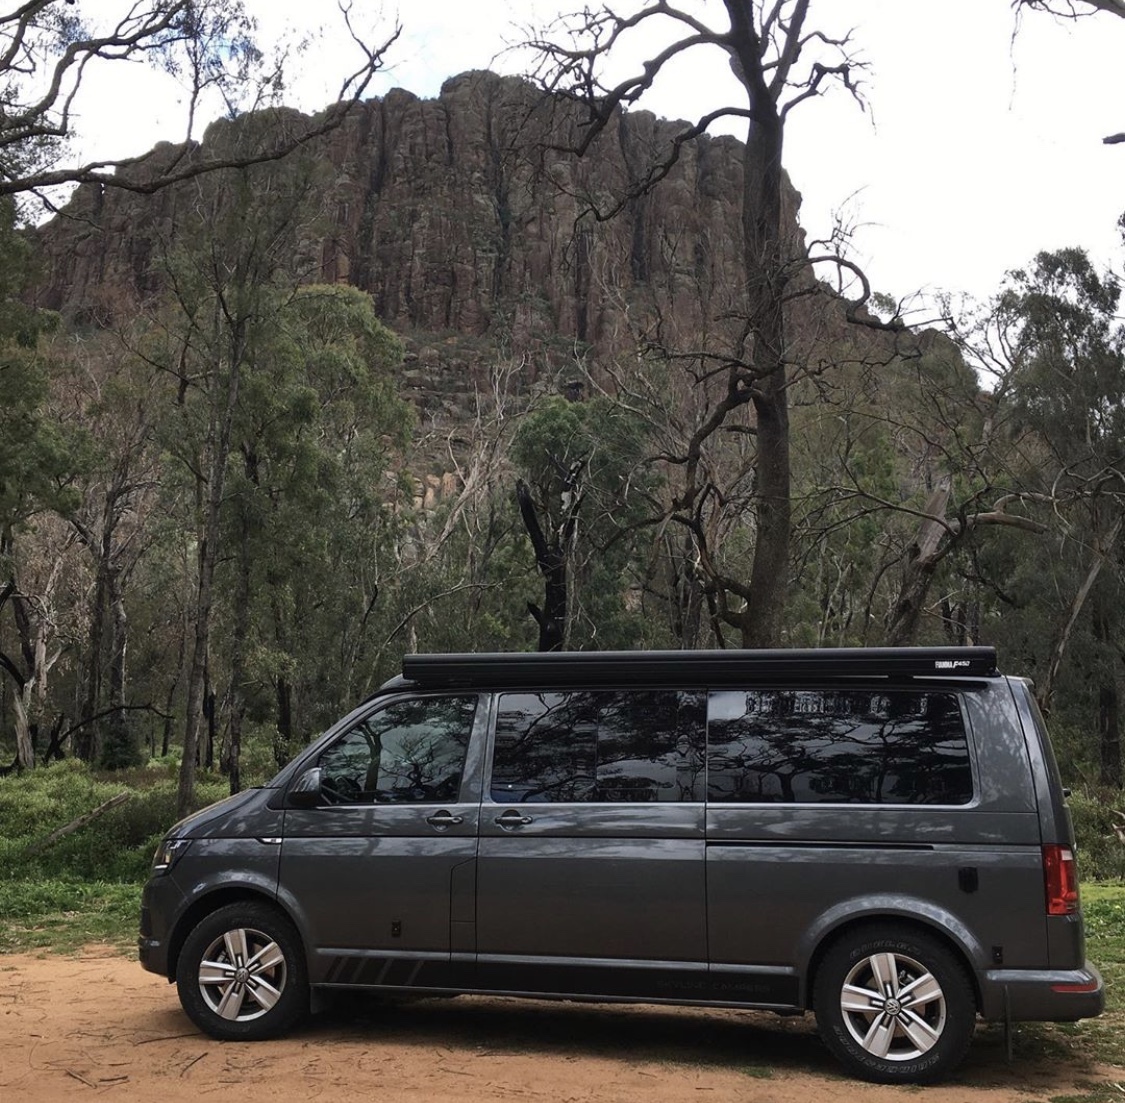 A dark grey Volkswagen campervan parked in the forest